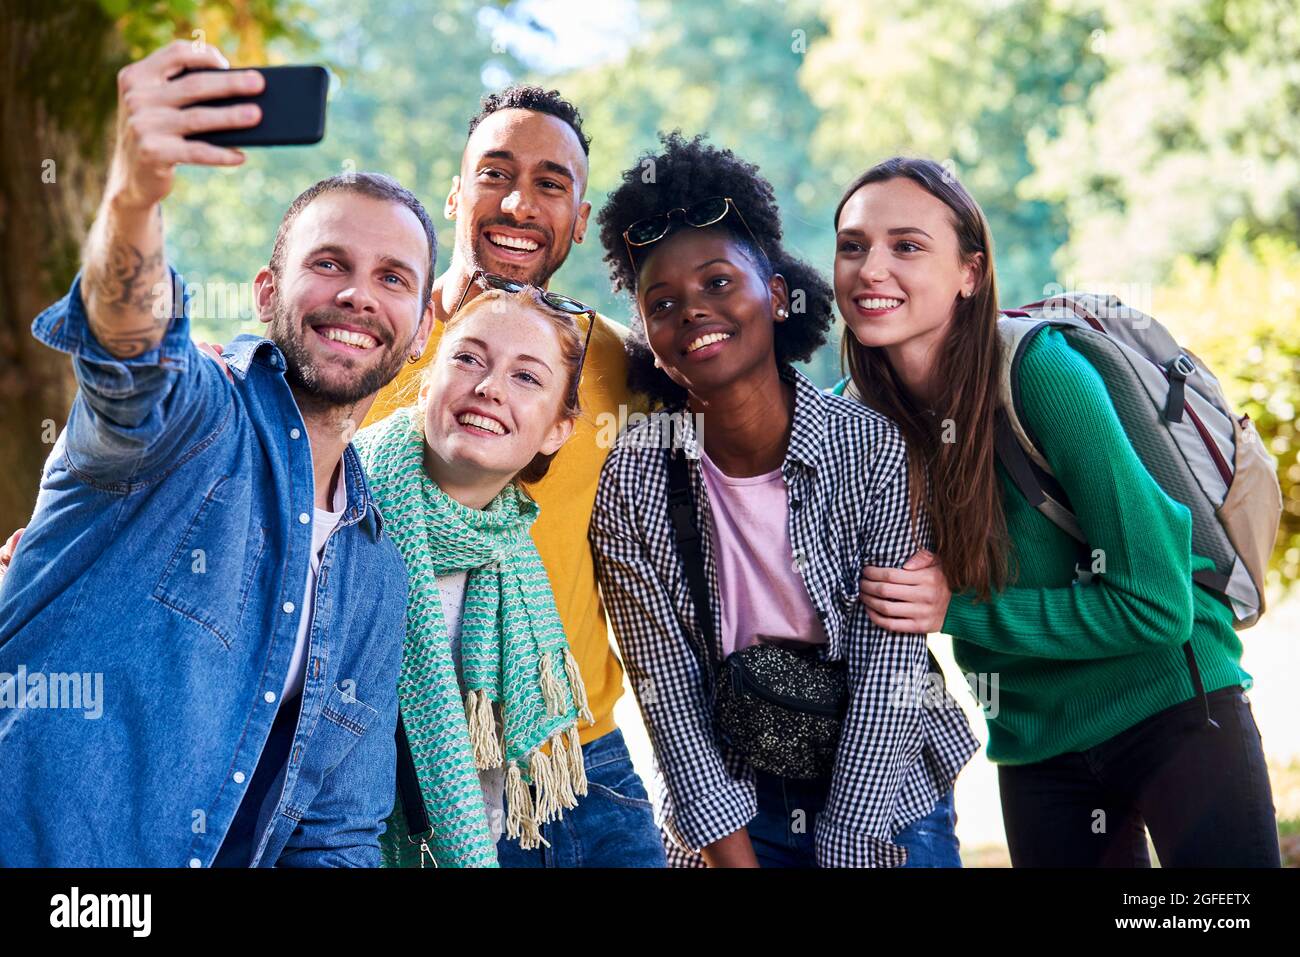 Glückliche Freunde, die im öffentlichen Park Selfie mit dem Smartphone machen Stockfoto